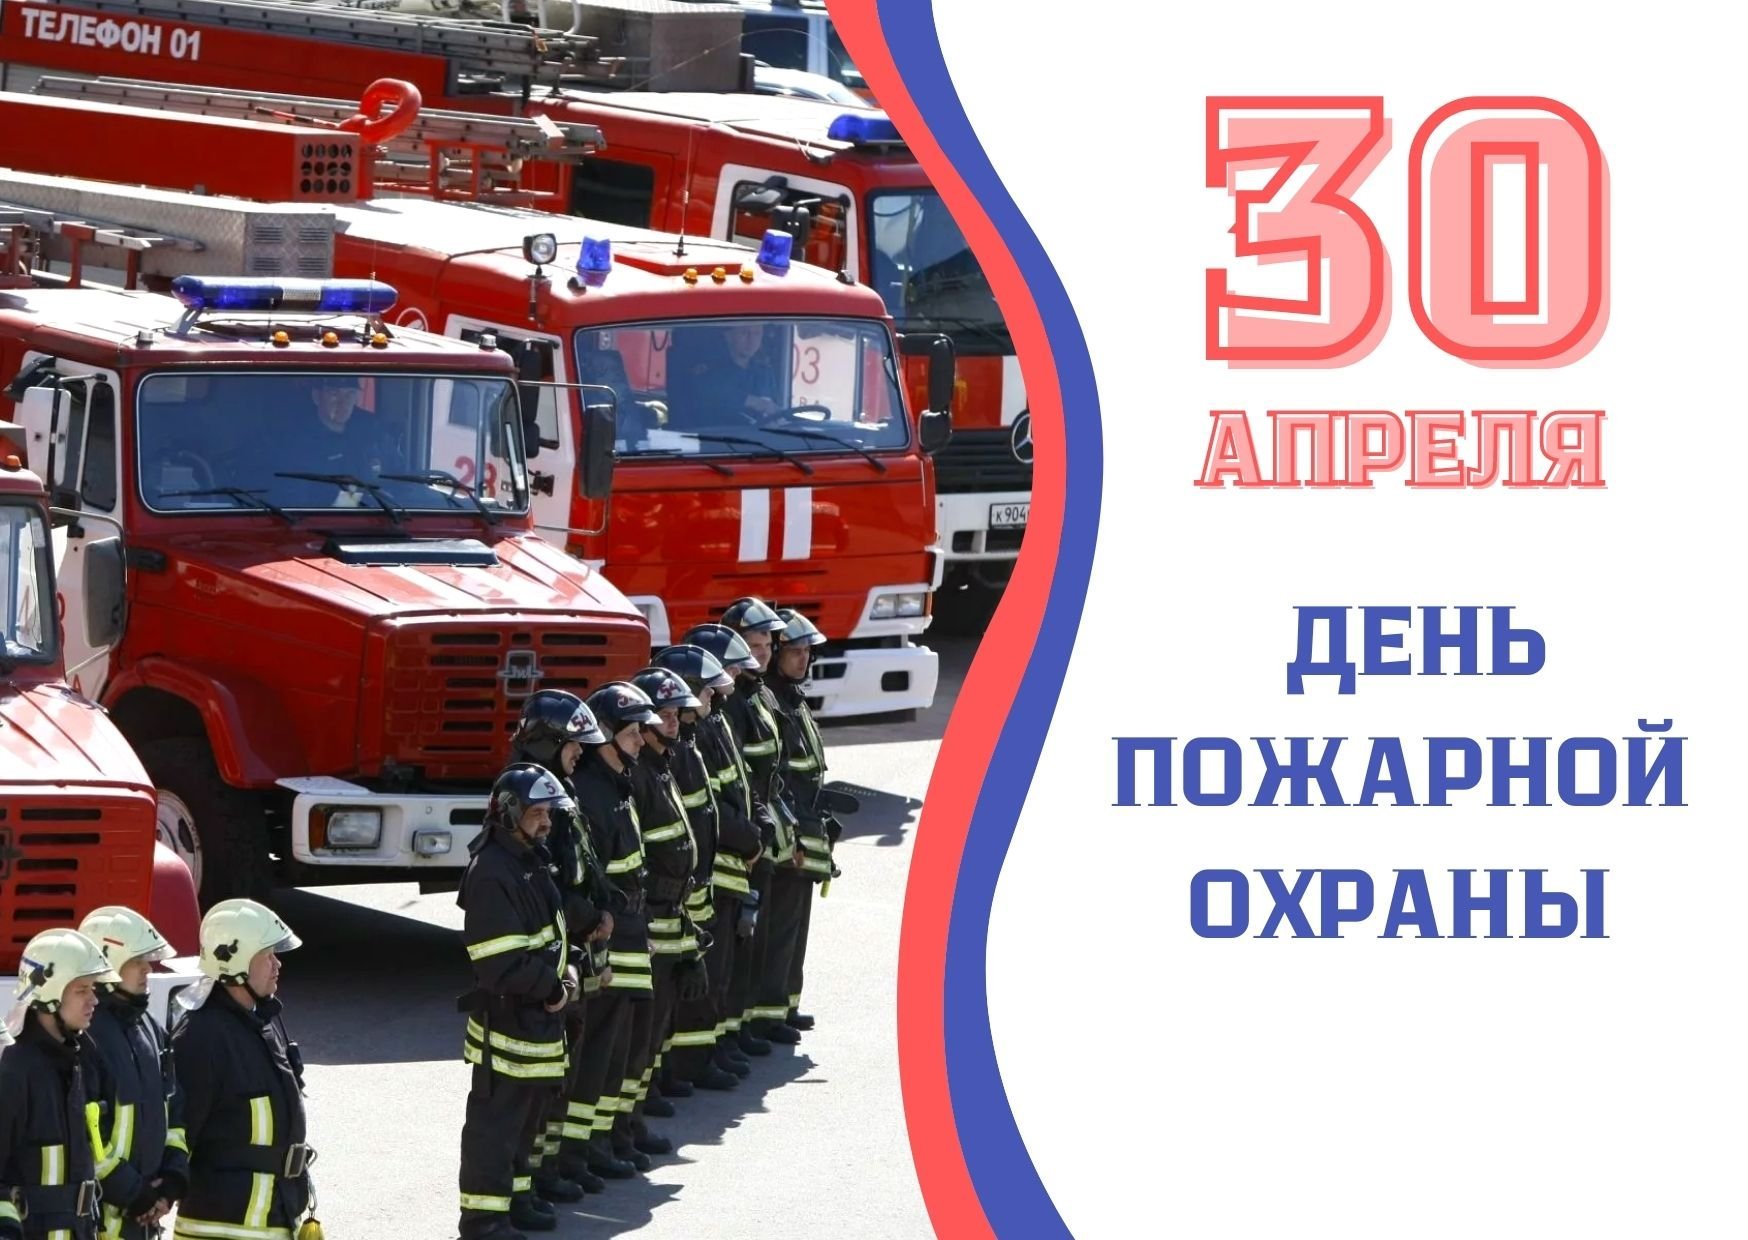 Какой праздник будет 30 апреля. Апрель день пожарной охраны России. С праздником пожарной охраны. С днем пожарного. Пожарная охрана открытка.